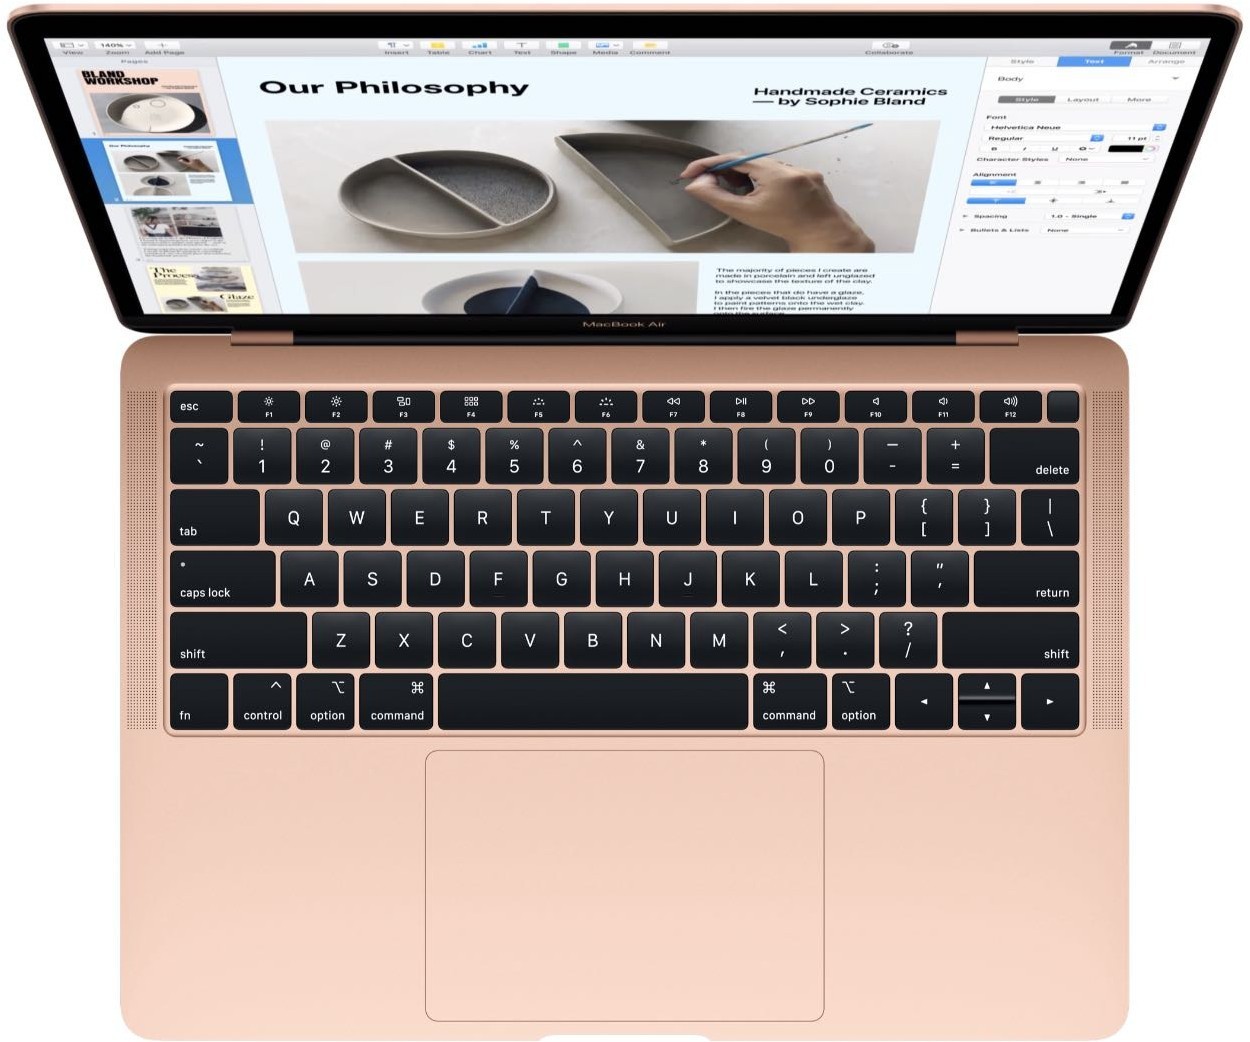 Купить Ноутбук Macbook Air